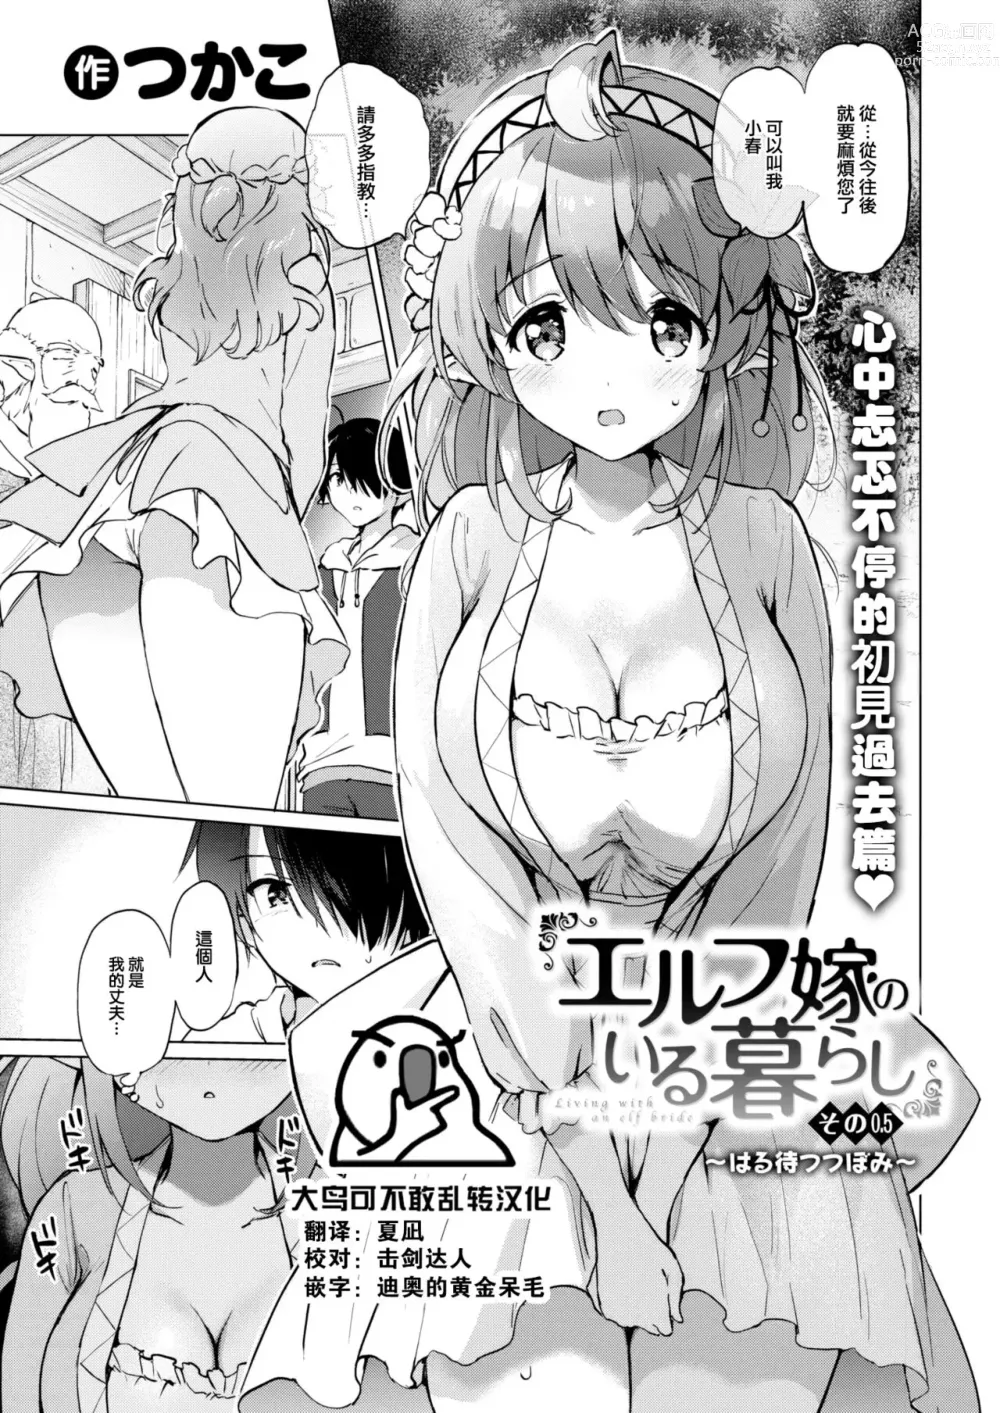 Page 1 of manga Elf yome no iru kurashi Sono 0.5 ~ Haru matsu tsubomi ~